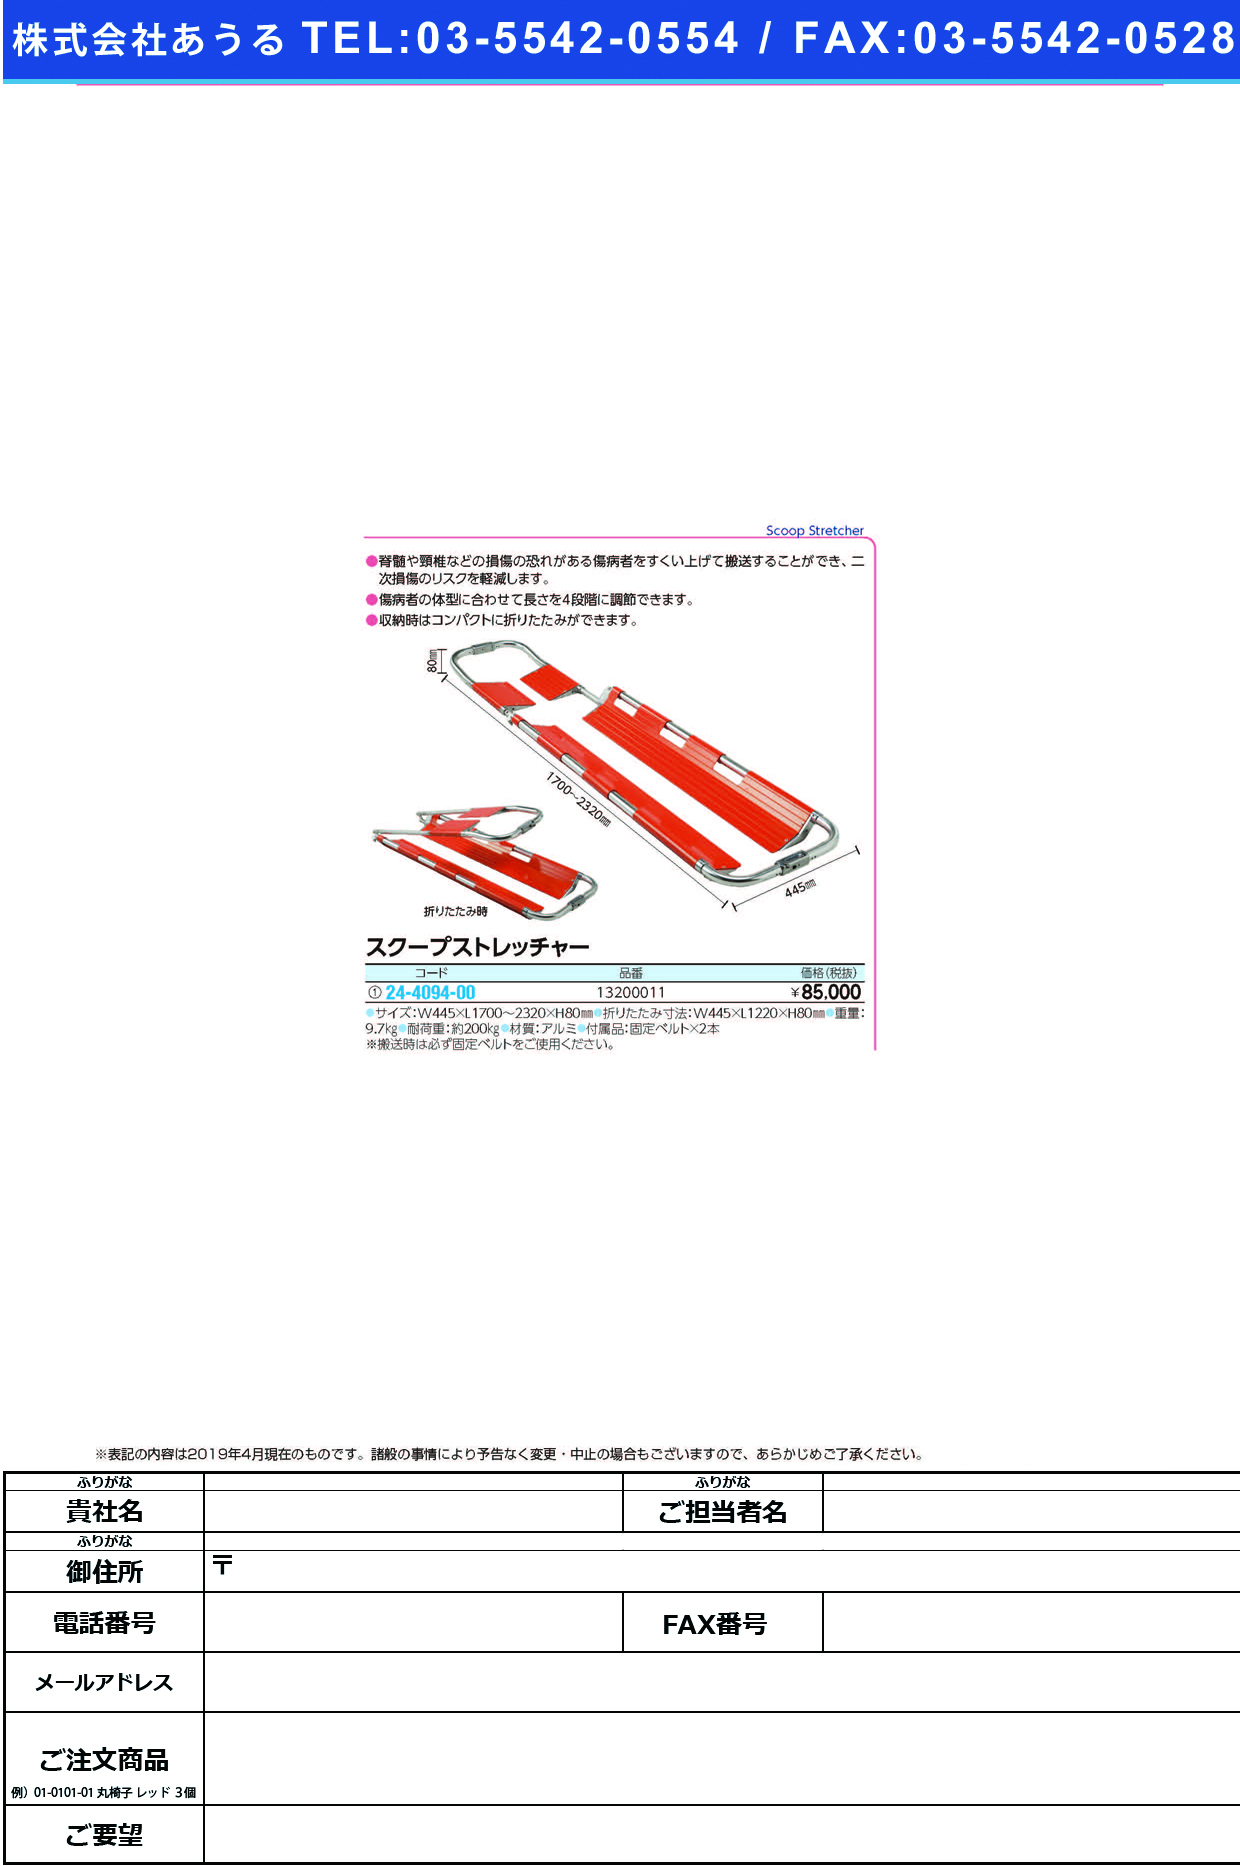 (24-4094-00)スクープストレッチャー 13200011 ｽｸｰﾌﾟｽﾄﾚｯﾁｬｰ【1台単位】【2019年カタログ商品】